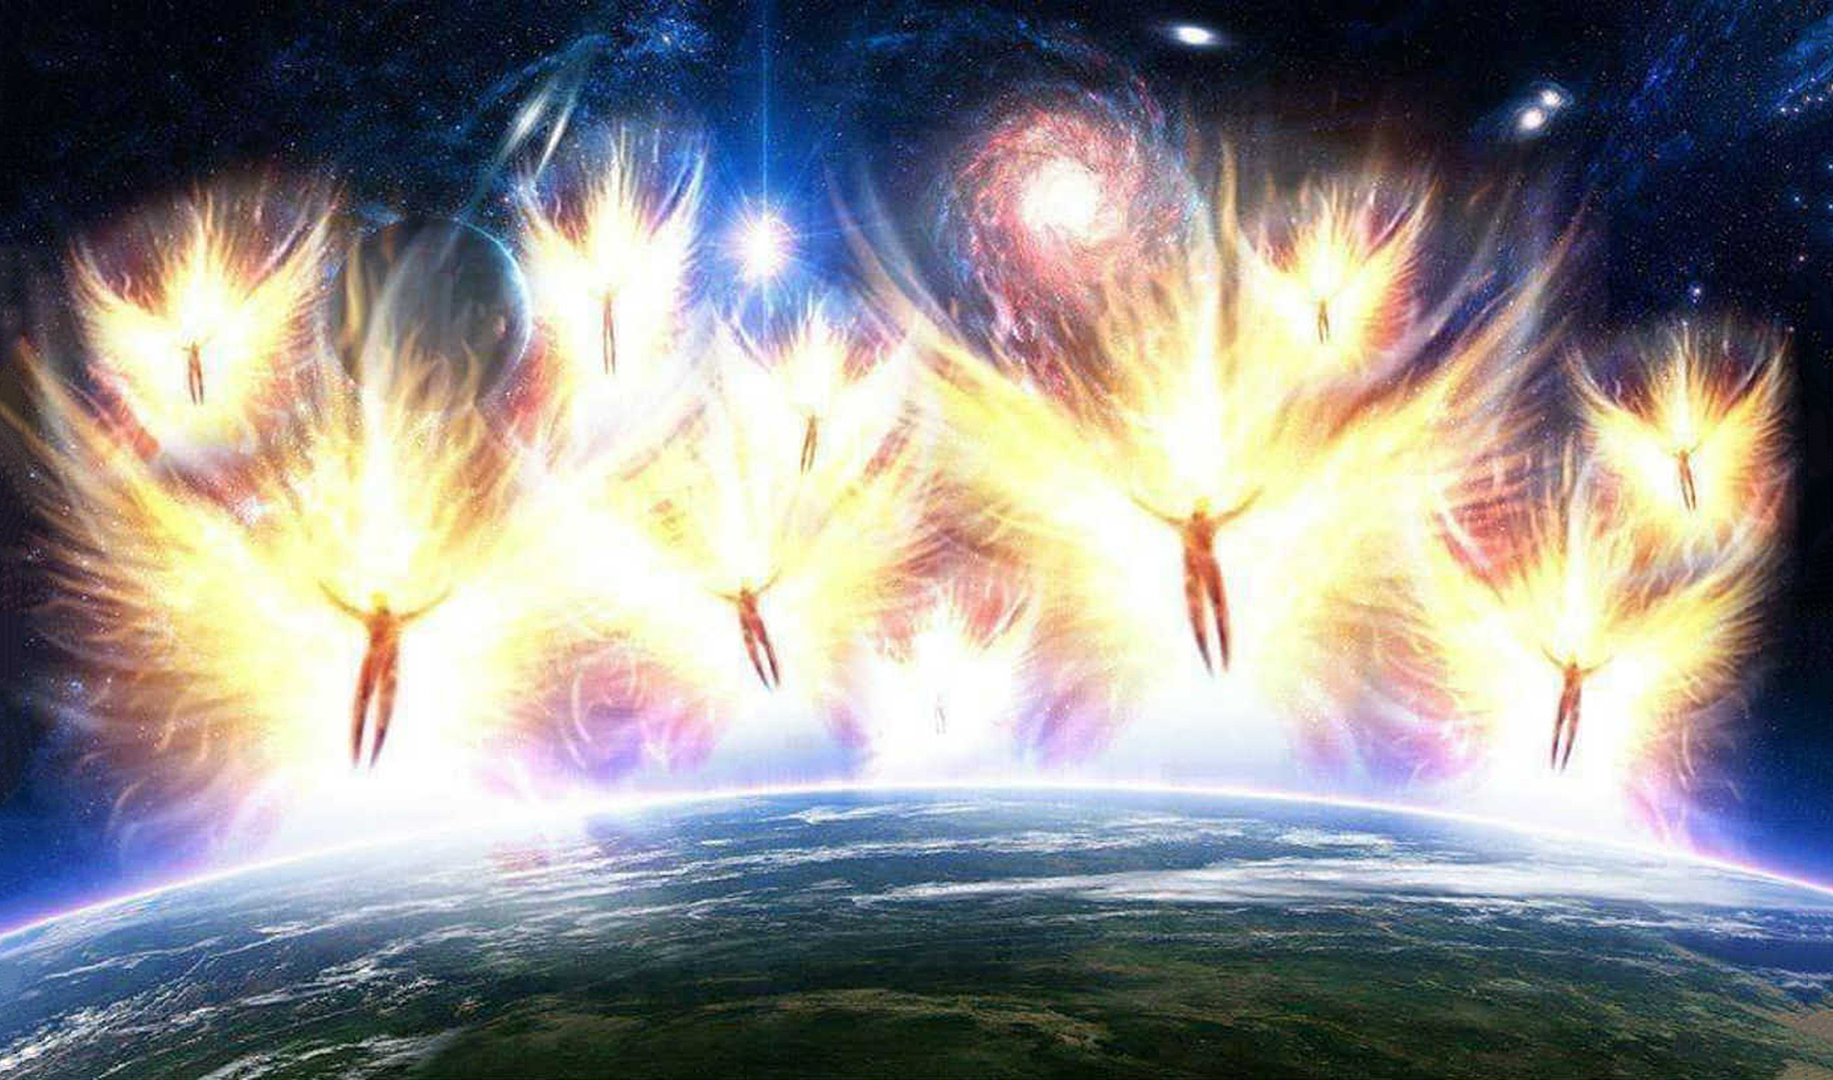 Мир света героев. Божественный огонь. Энергия космоса. Ангельская энергия. Вознесение души.